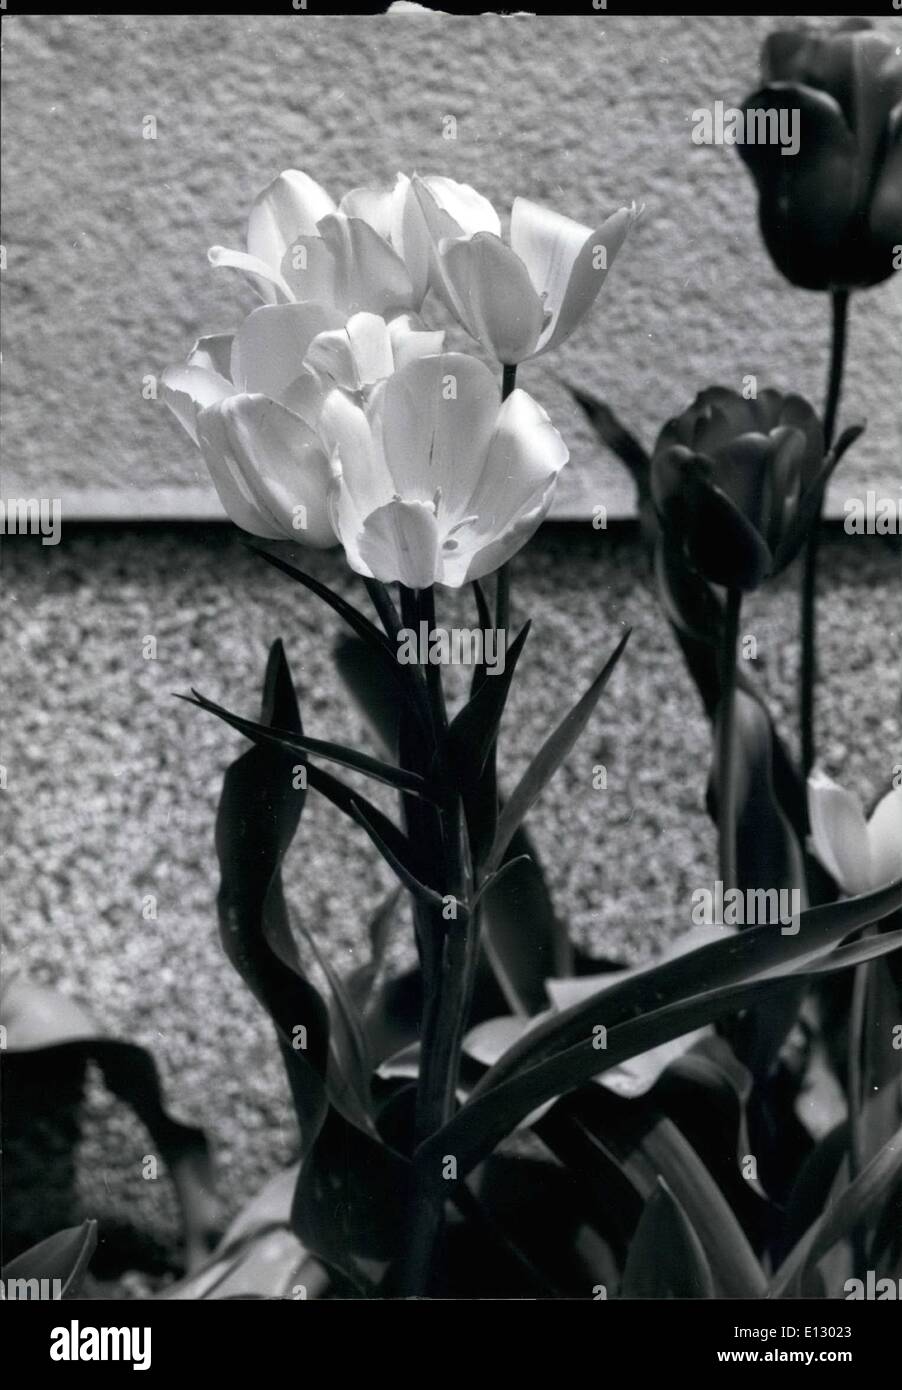 Febbraio 25, 2012 - a seguito della recente ondata di freddo, alcuni fiori interessanti sono da vedere nei parchi di Osaka, Giappone, questo tulip sentiti così stimolata dal freddo snap che esso ha deciso di visualizzare quattro bei fiori gialli su uno stelo. Foto Stock